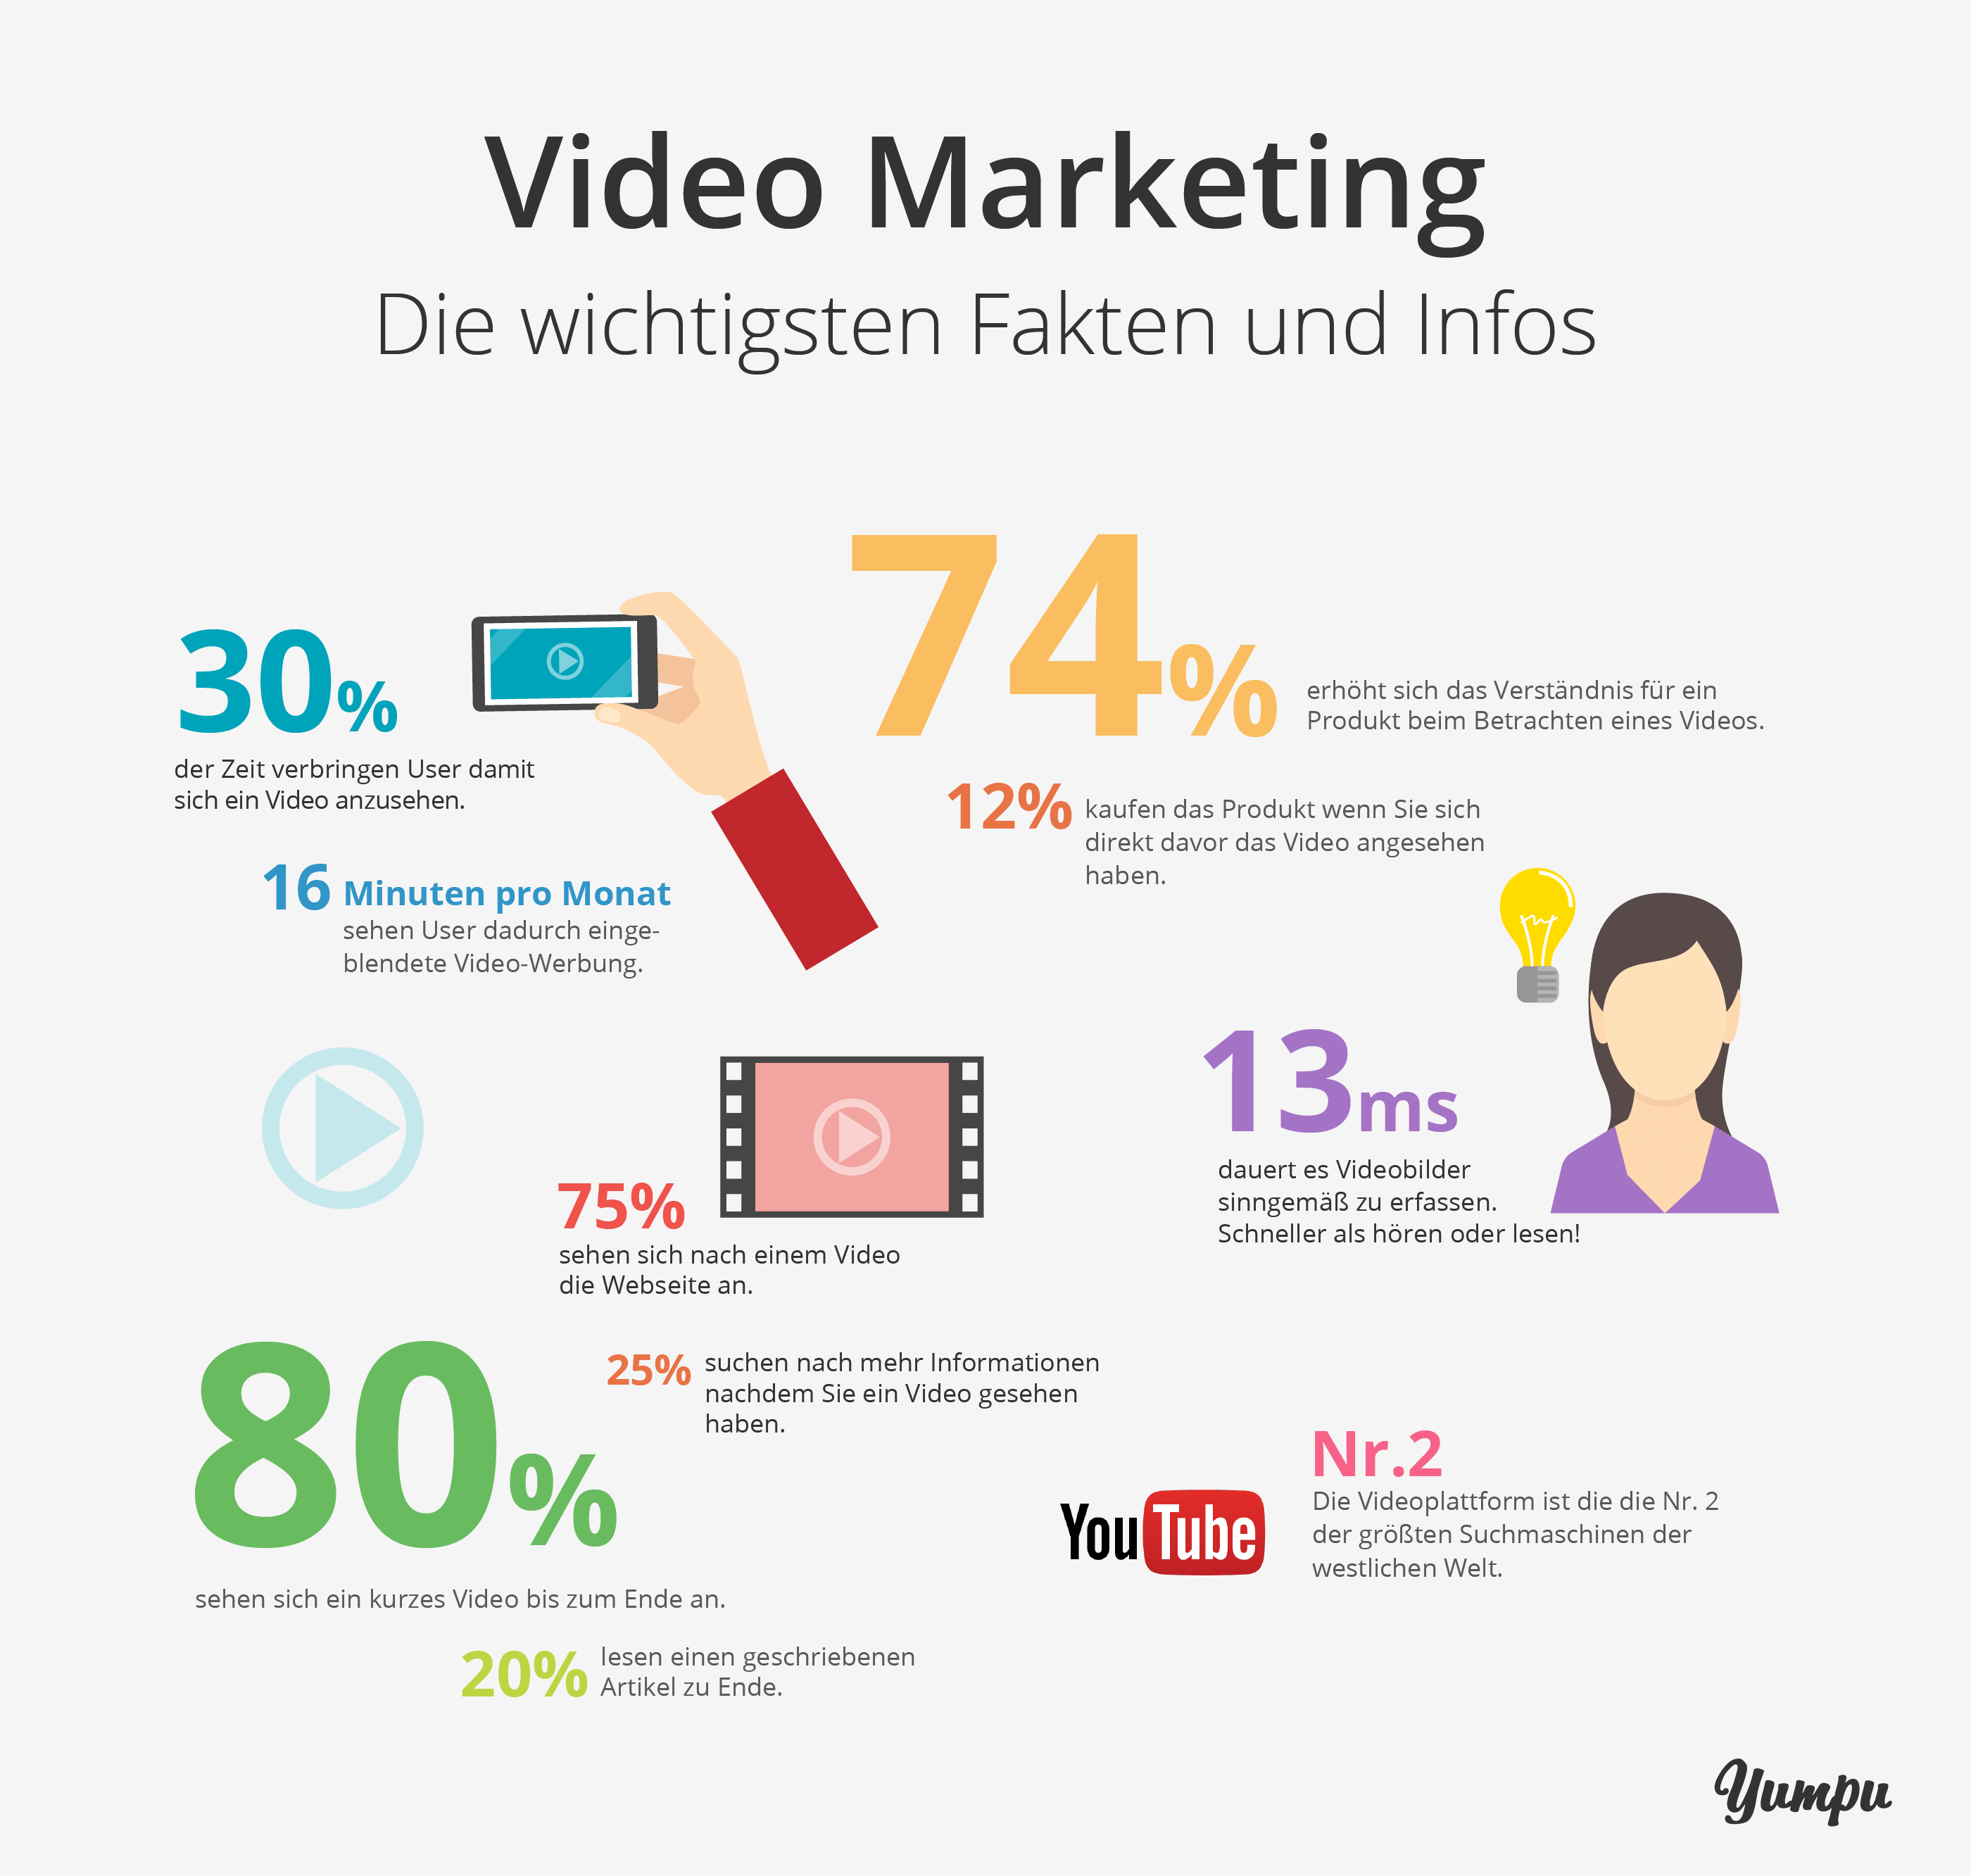 Die wichtigsten Fakten und Infos zum Thema Video Marketing